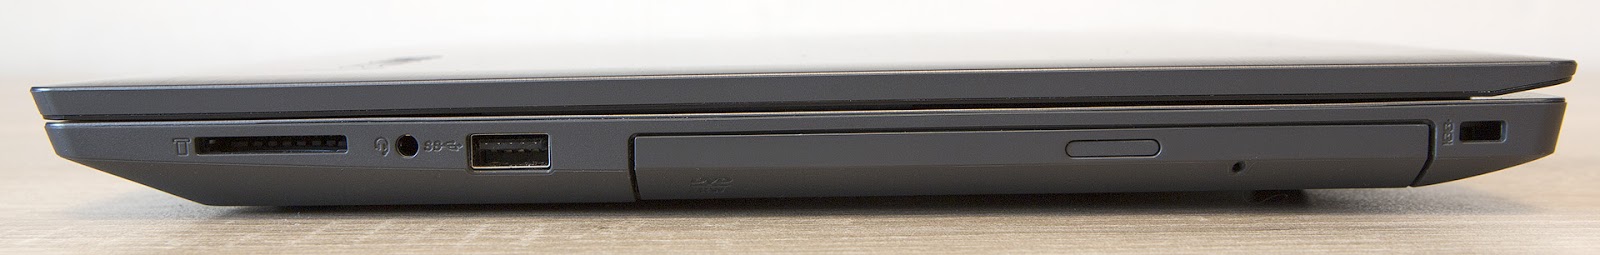 Обзор ноутбука Lenovo V330-15: надёжный офисный трудяга - 7